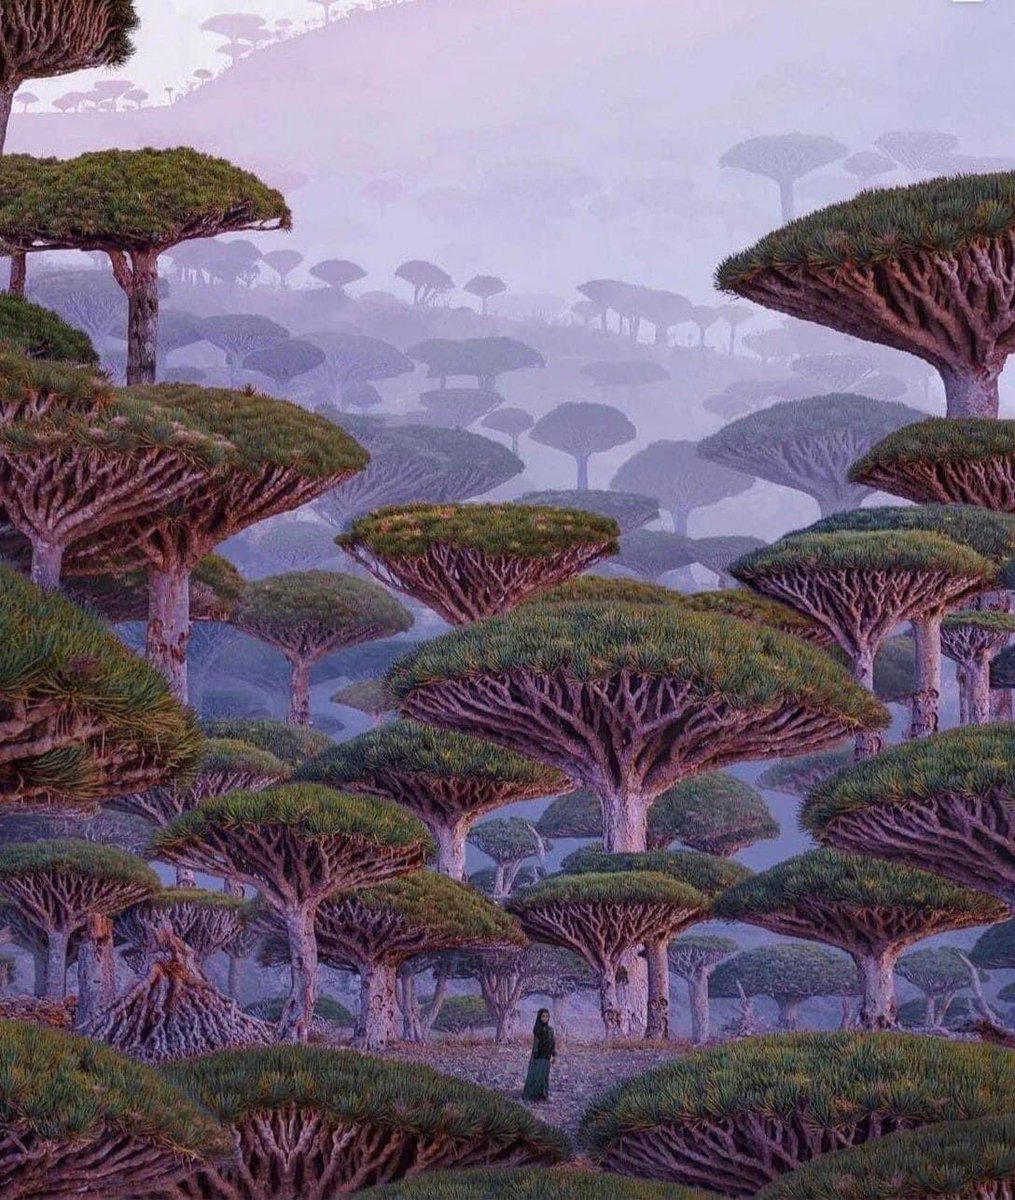 The Socotra Dragon Trees from Socotra Island, Yemen